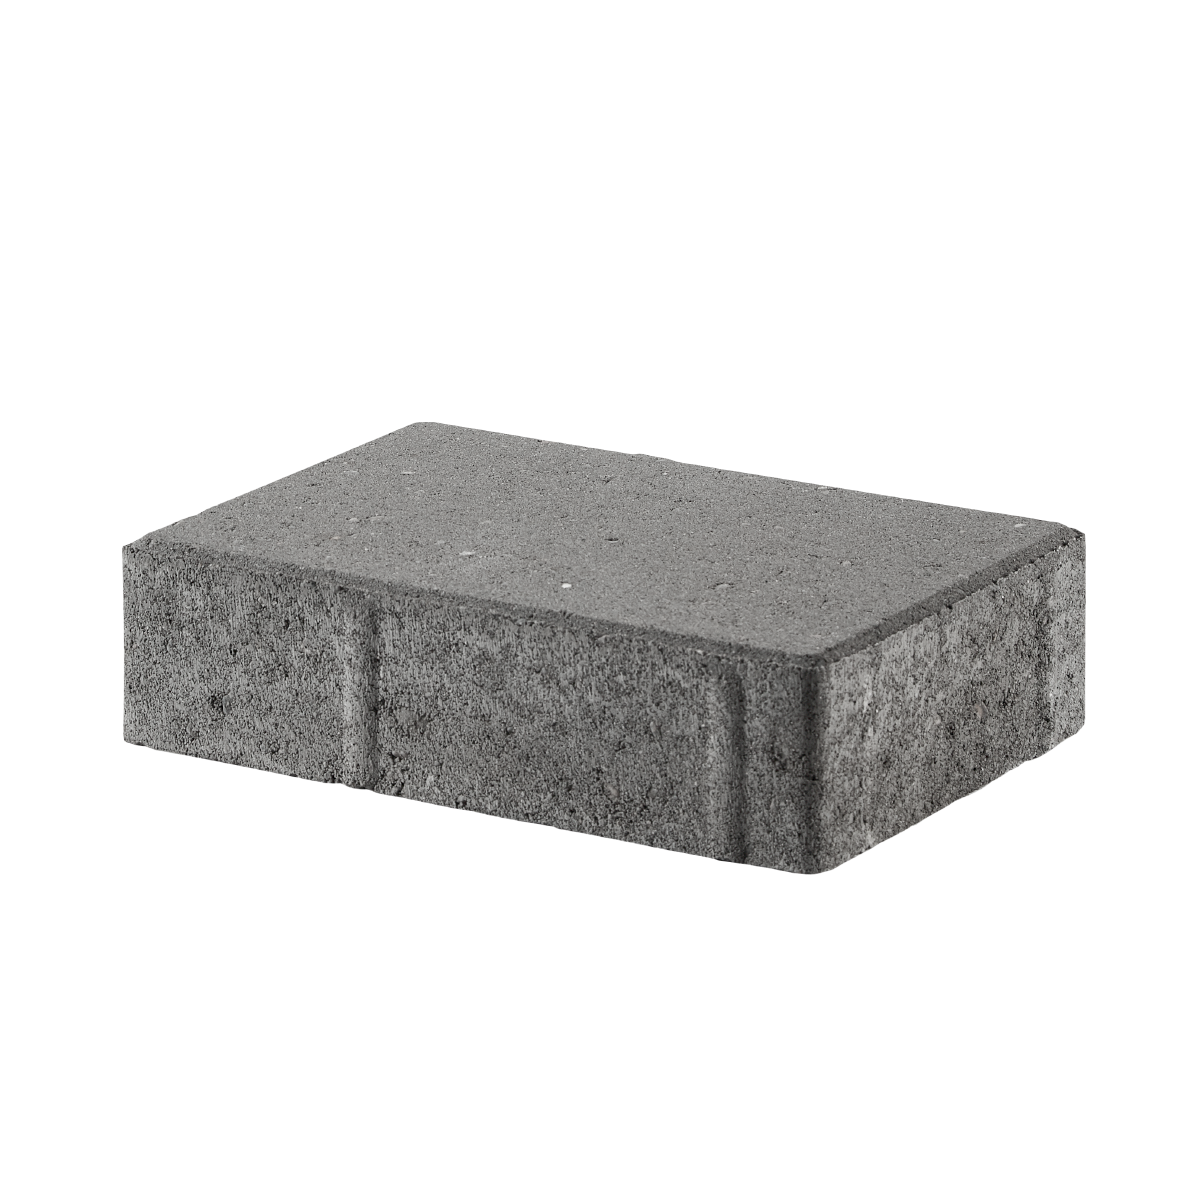 Bondestein 14x21x5 cm Grau Normalstein